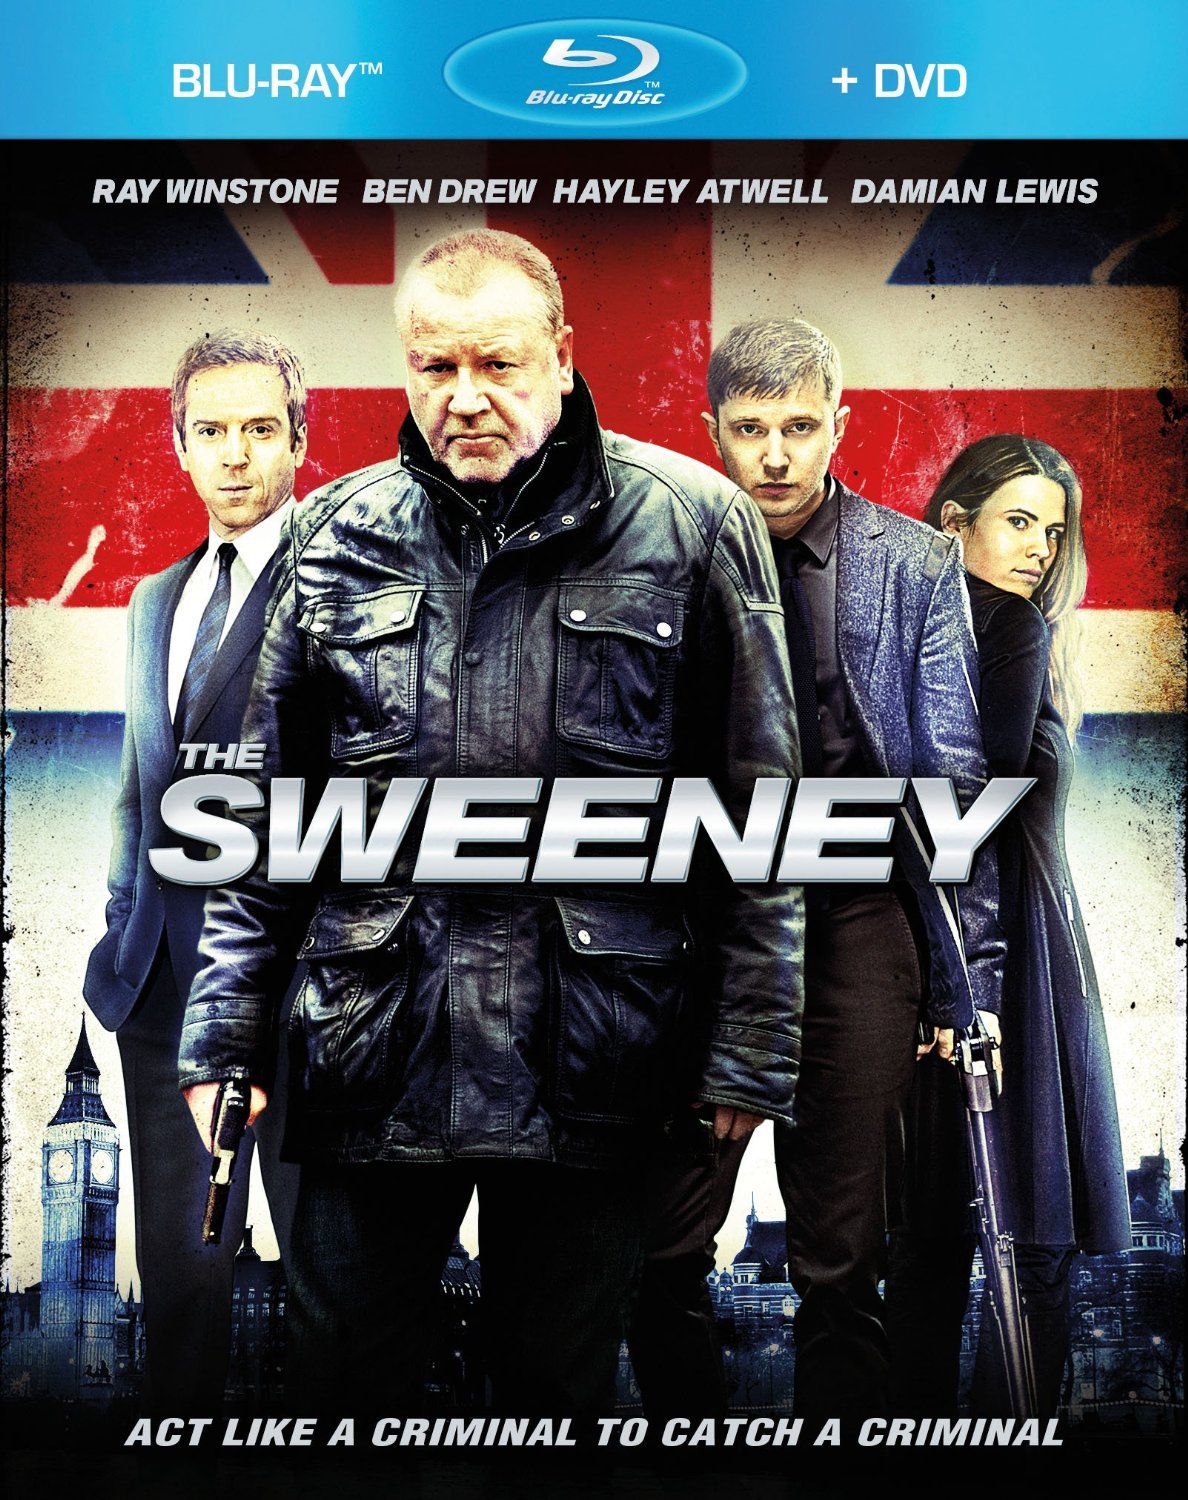 The Sweeney #1